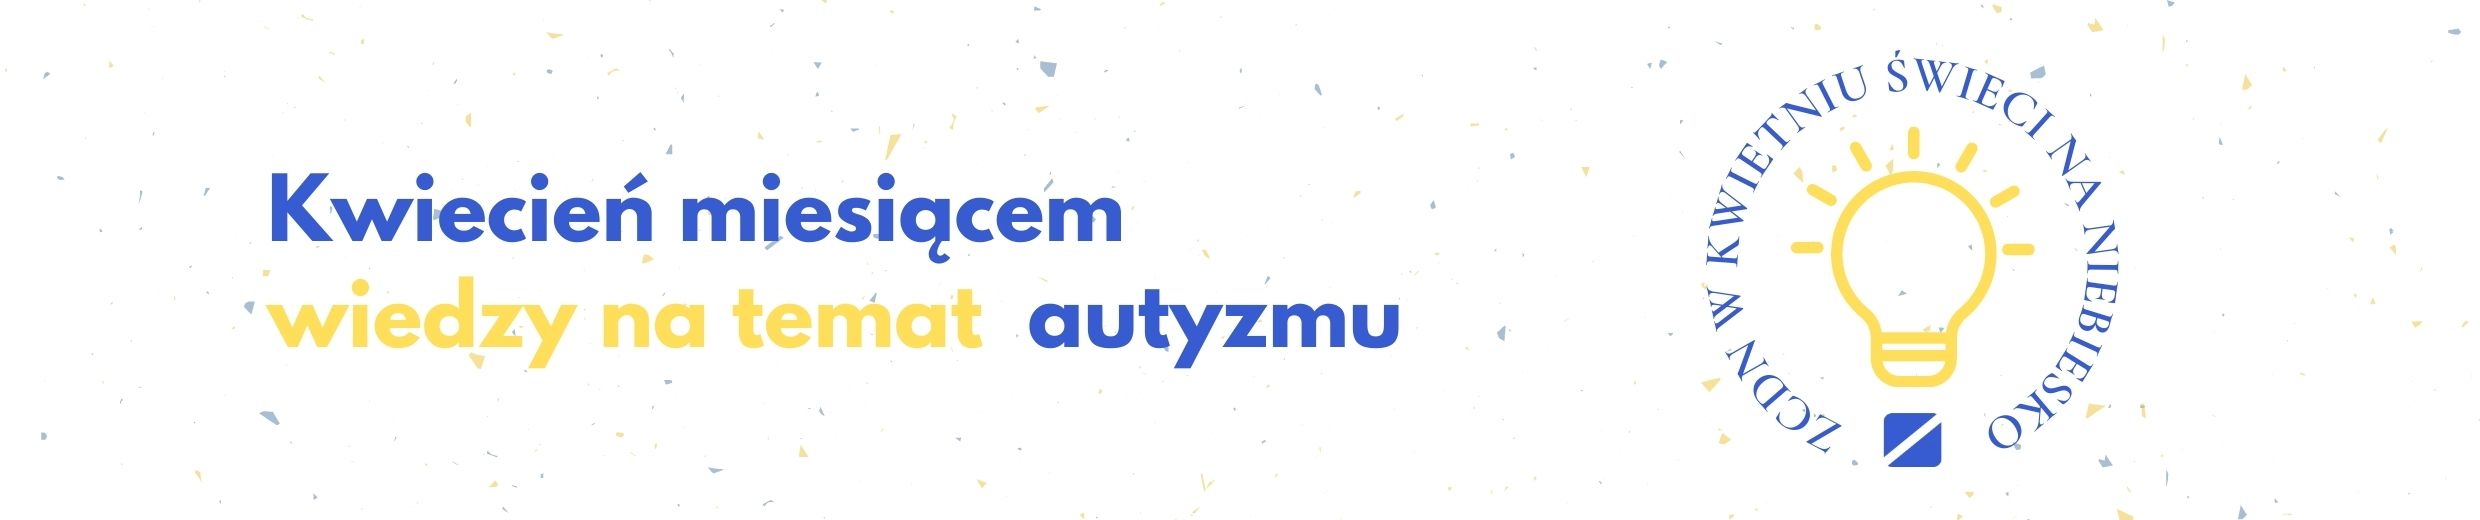 W kwietniu ZCDN zaświeci na niebiesko! Baner reklamujący miesiąc wiedzy nt. autyzmu